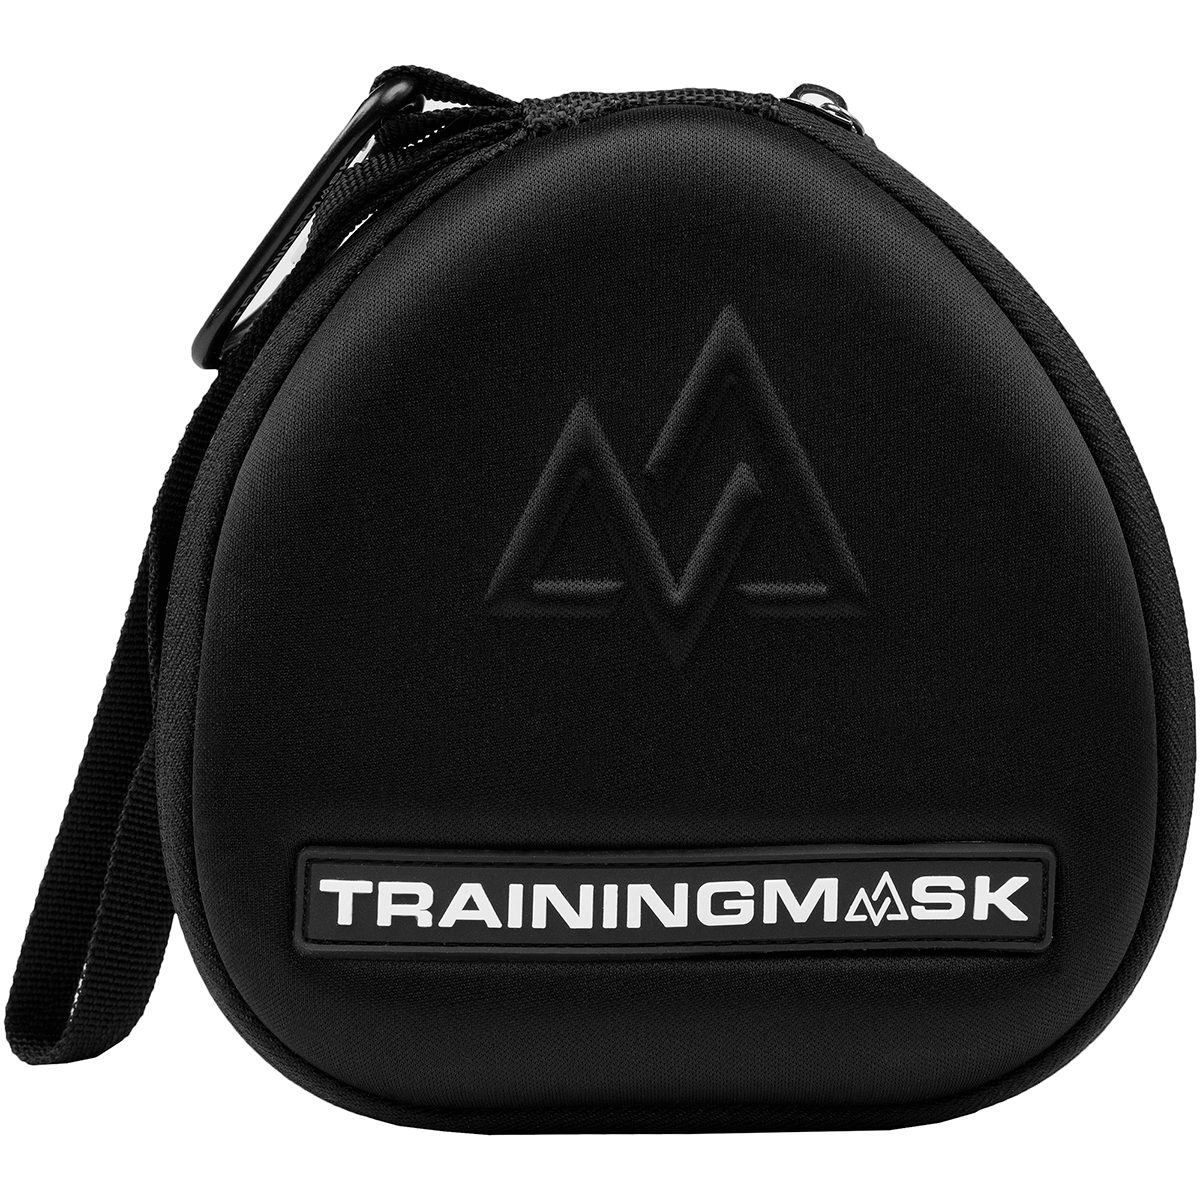 TrainingMask Carry Case with Logo